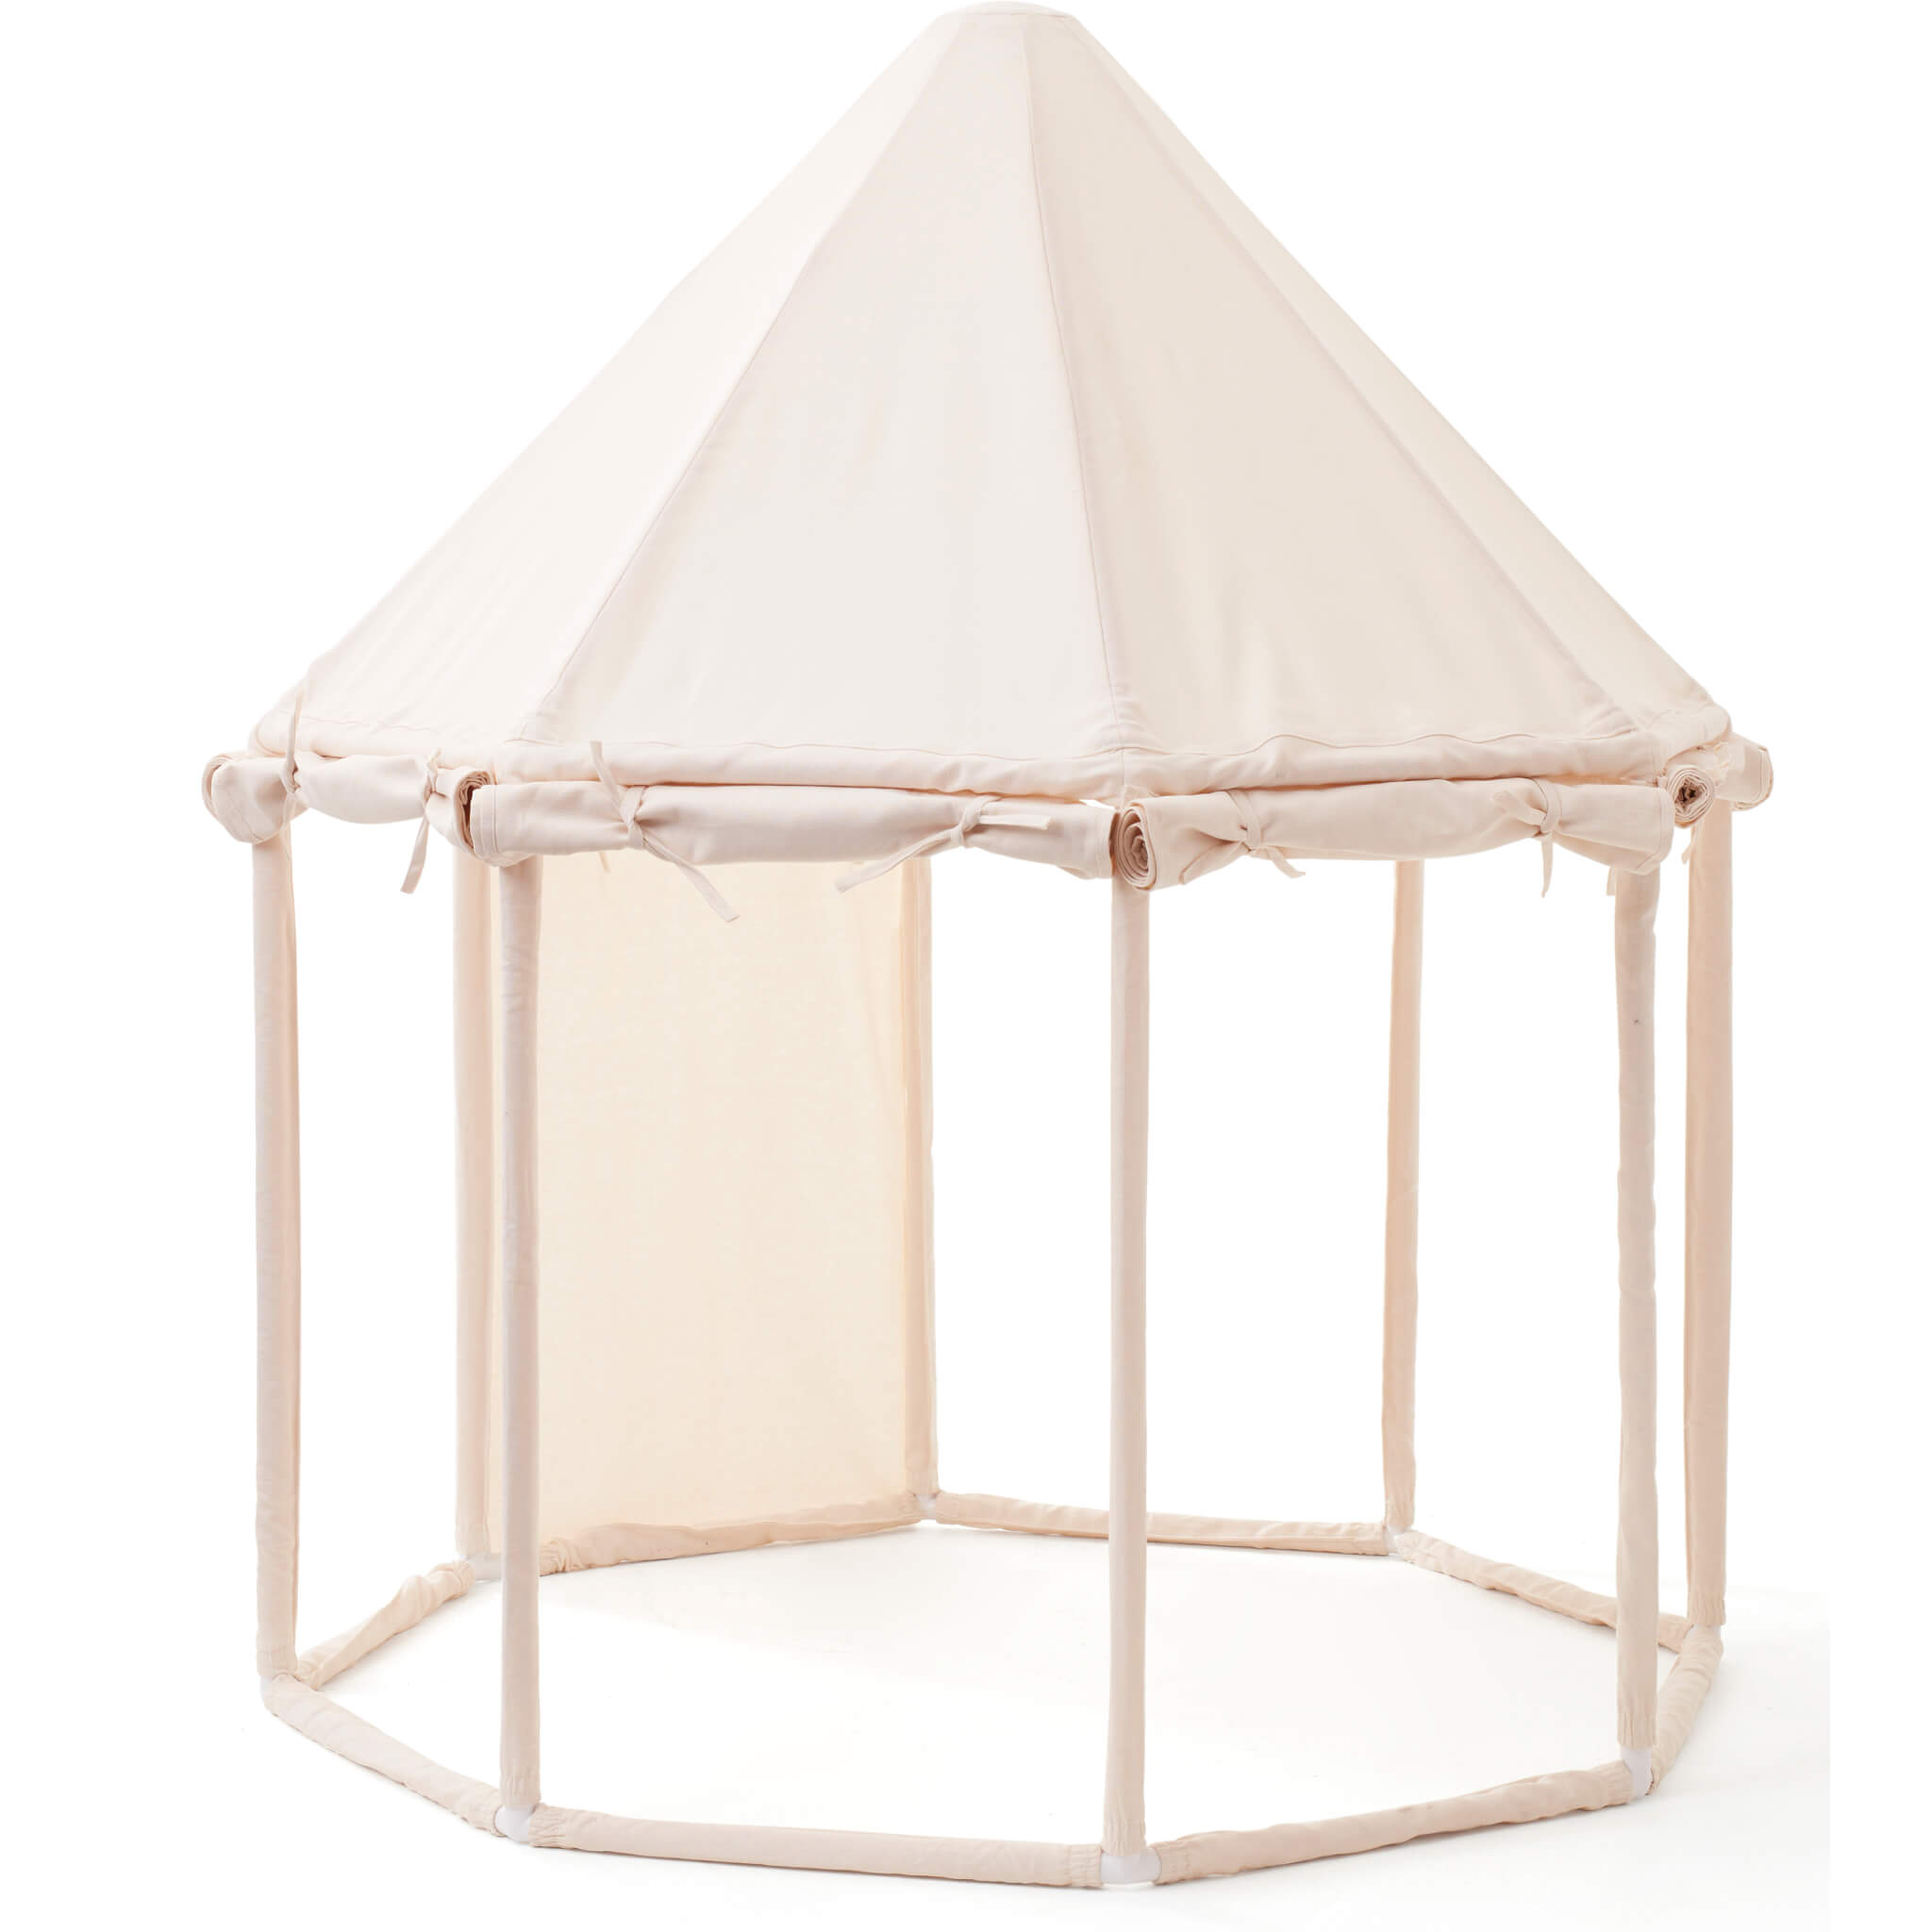 Pavilion Tent - Off White Cotton